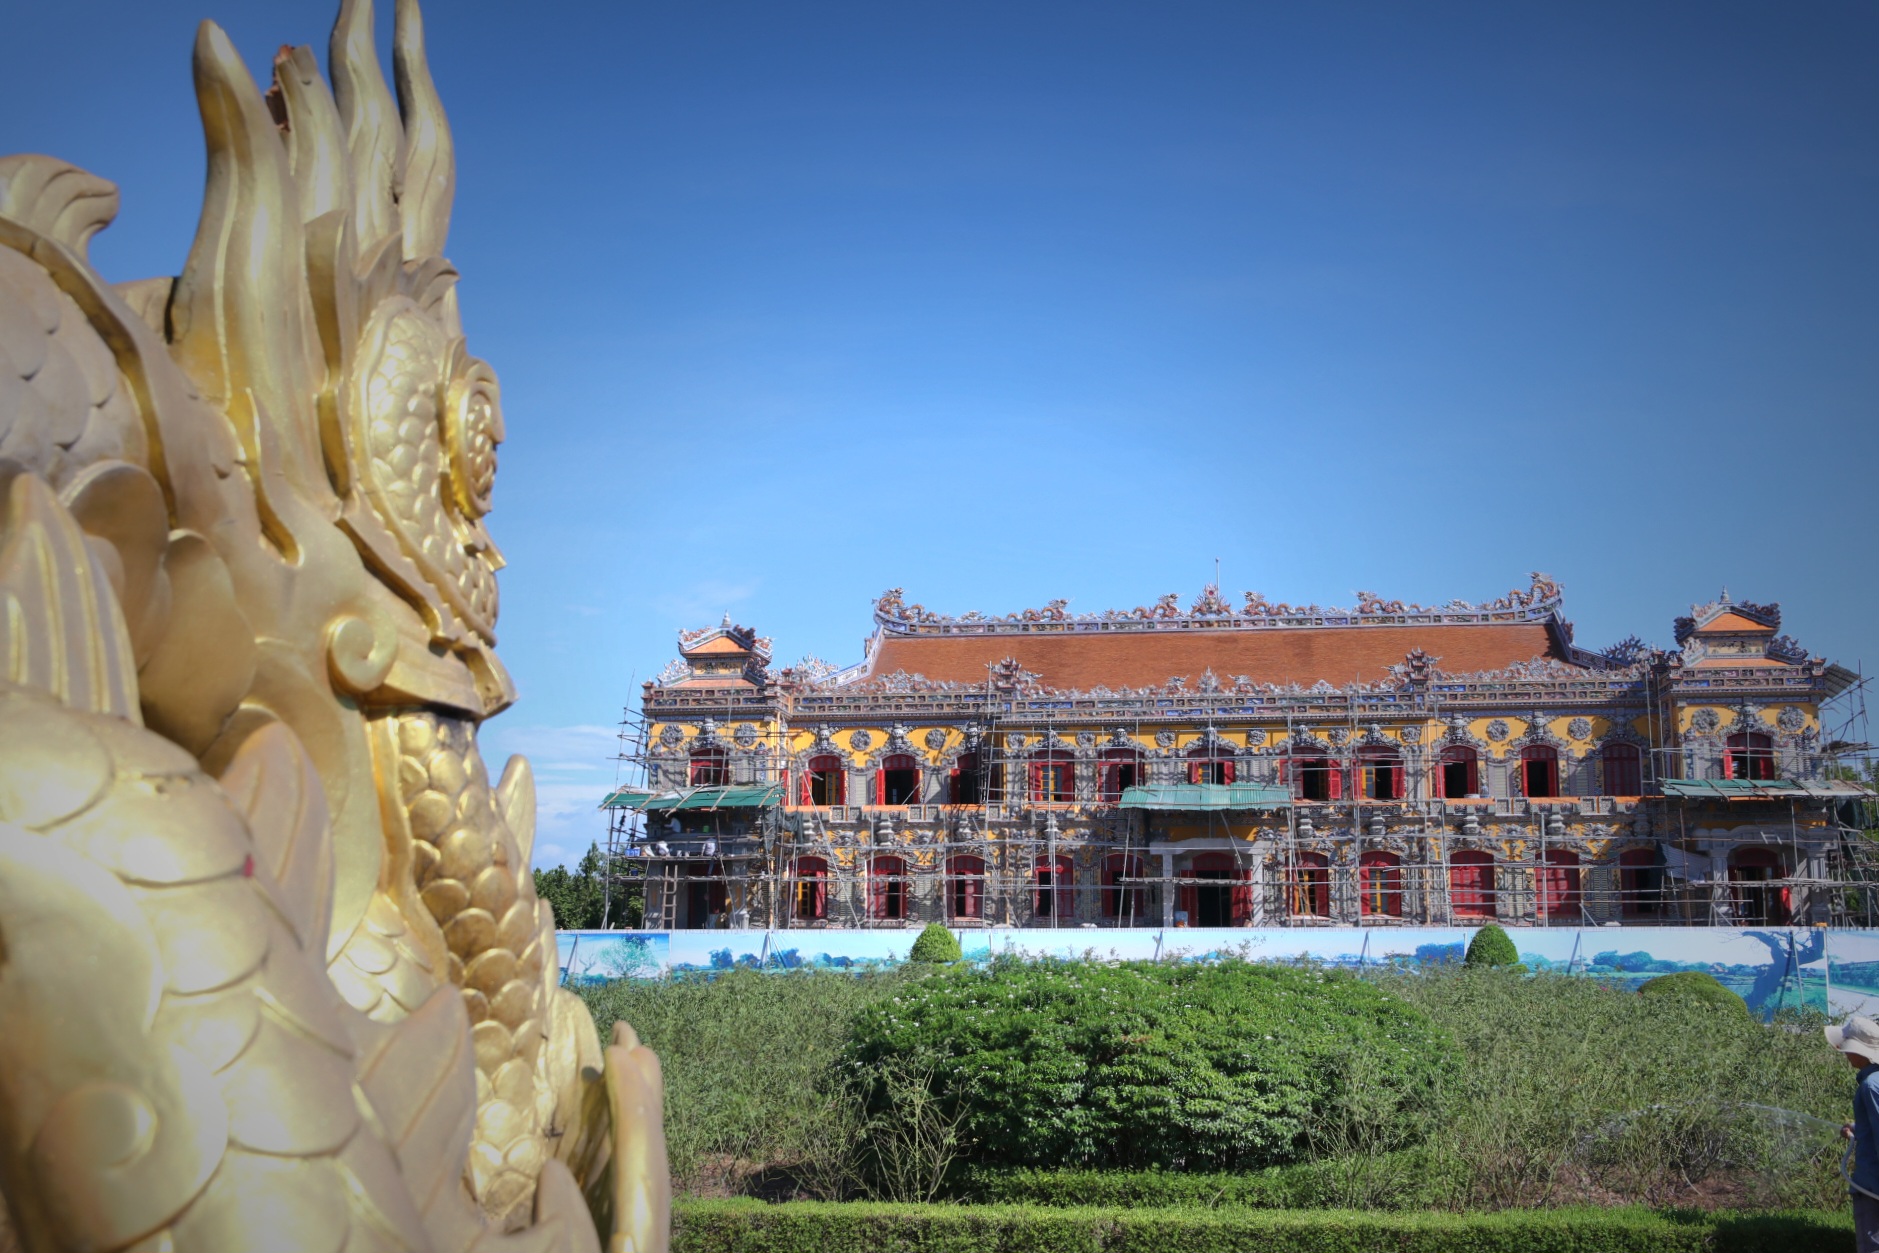 Do đó, UBND tỉnh Thừa Thiên Huế đã phê duyệt Dự án “Tu bổ, phục hồi và tôn tạo di tích điện Kiến Trung” với mức kinh phí 123 tỉ đồng (tương đương 5,5 triệu USD thời điểm đó)